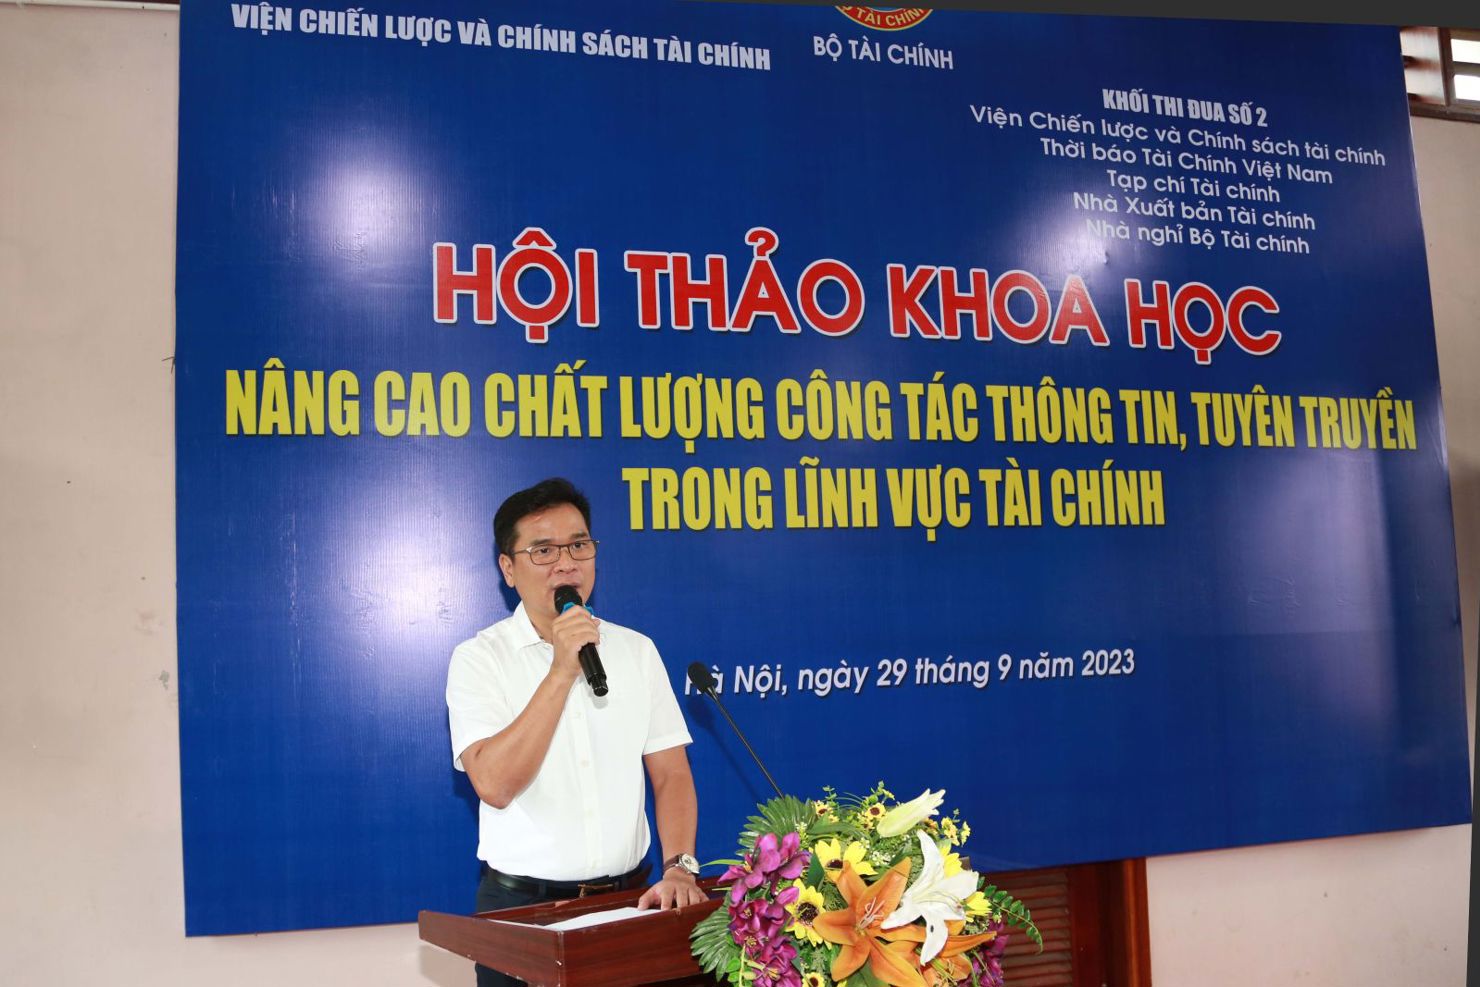 &Ocirc;ng Nguyễn Như Quỳnh, Viện trưởng Viện Chiến lược v&agrave; Ch&iacute;nh s&aacute;ch t&agrave;i ch&iacute;nh ph&aacute;t biểu tại Hội thảo